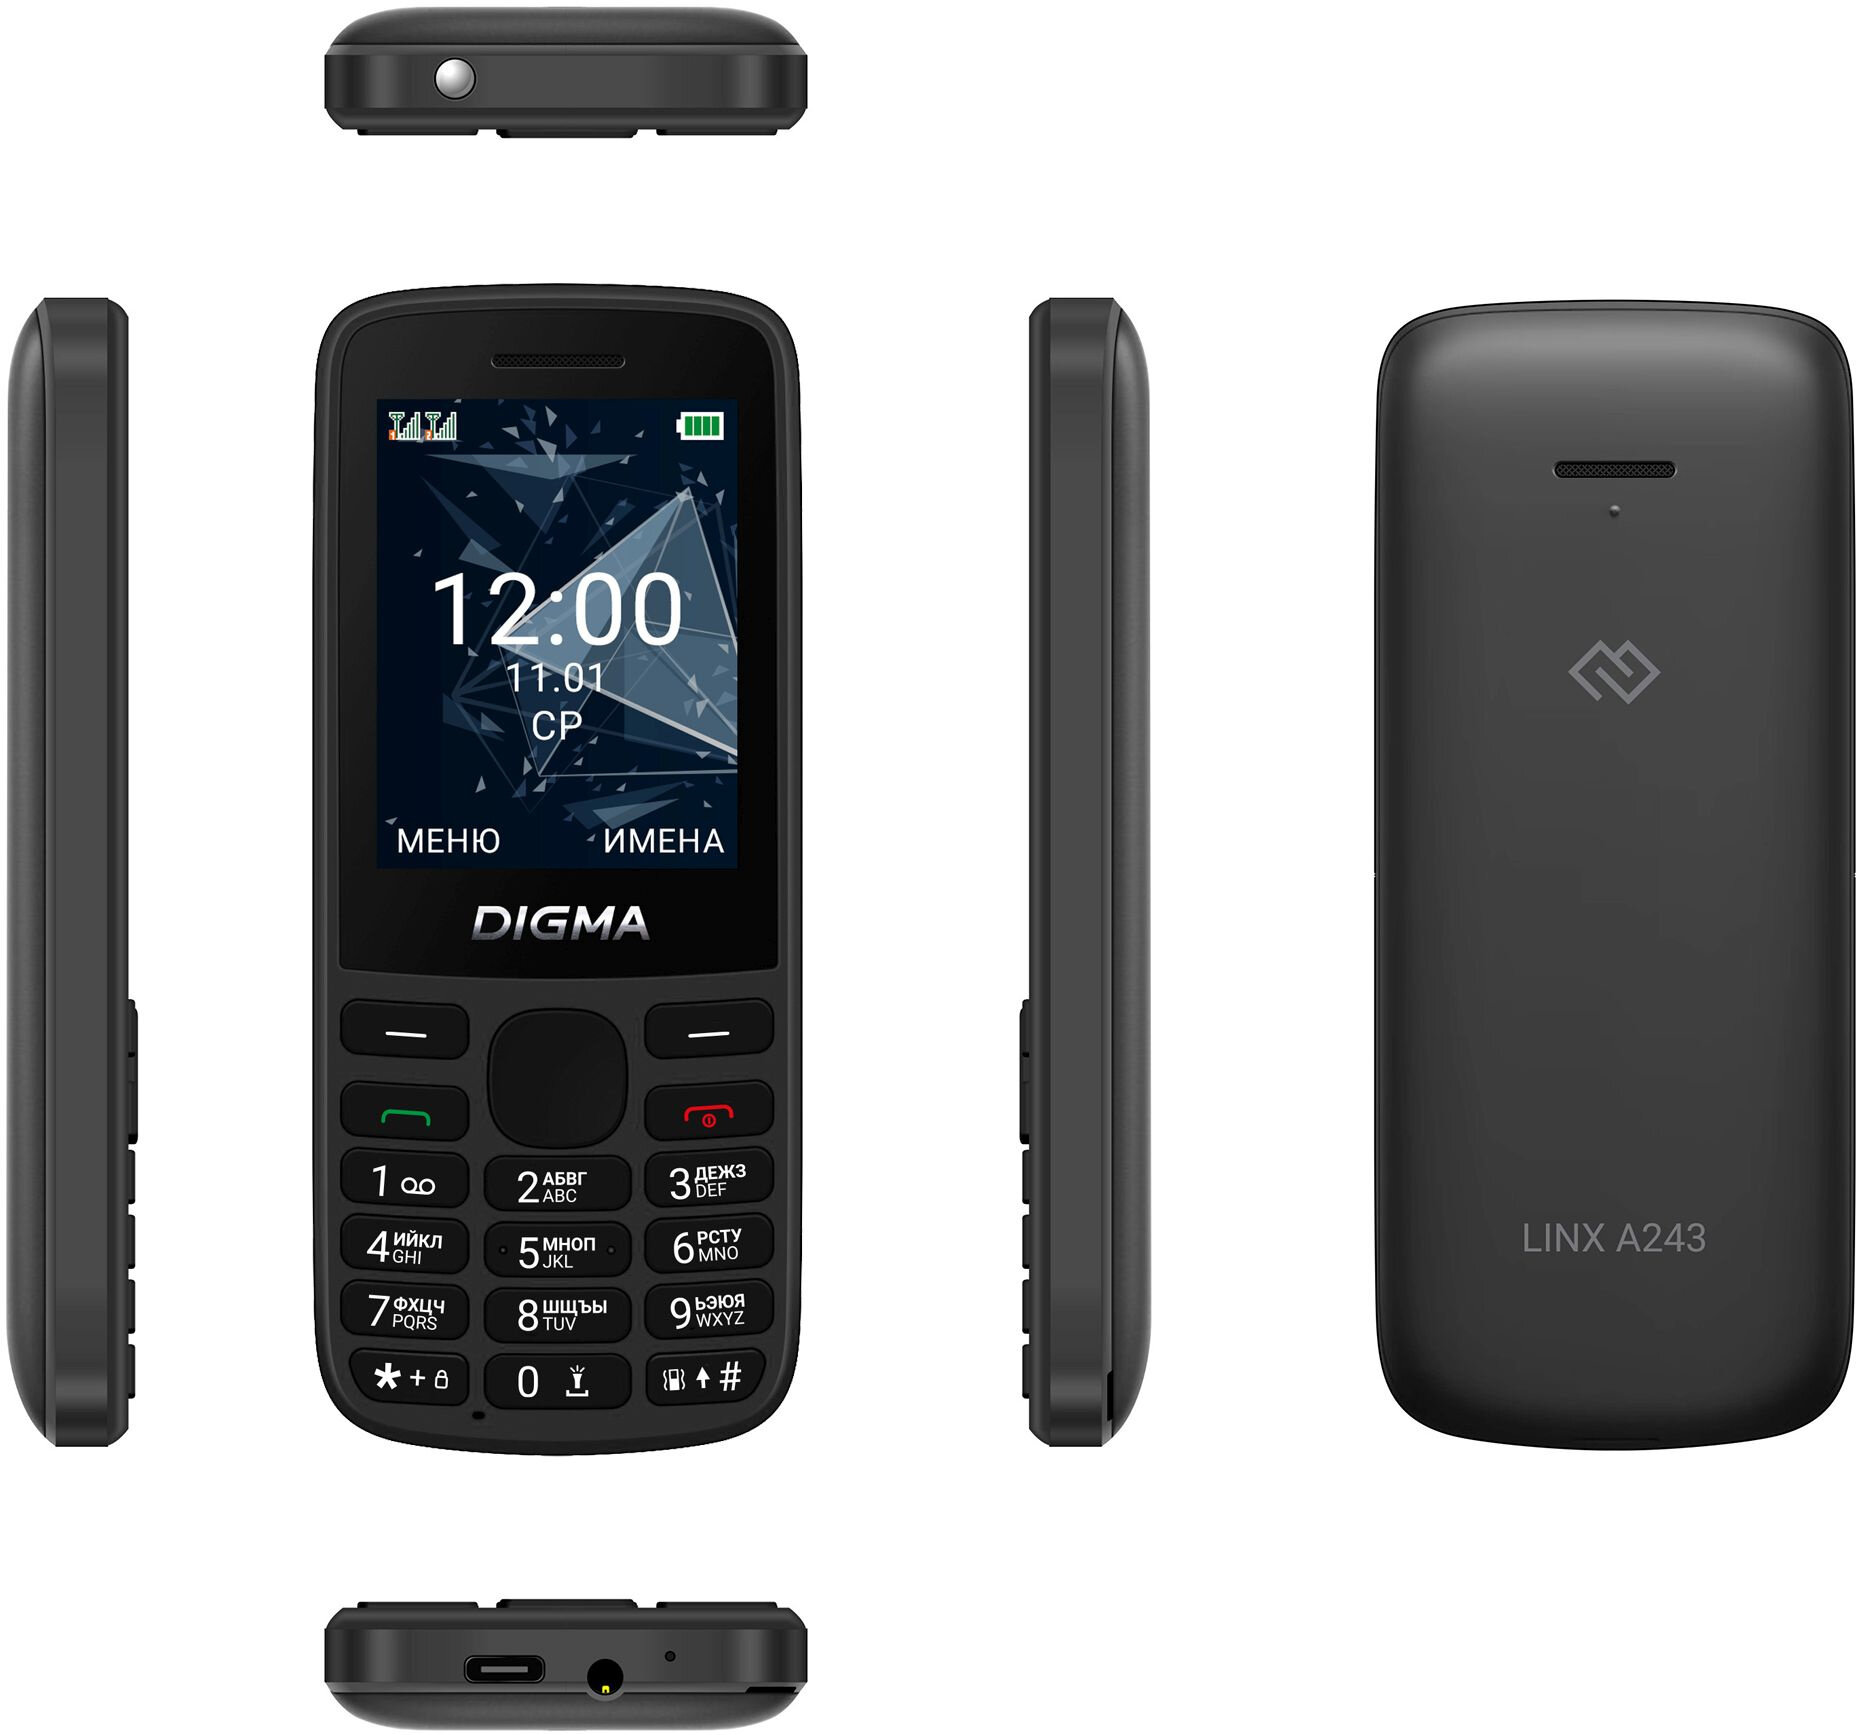 Мобильный телефон Digma 1888900 Linx 32Mb 32Mb черный моноблок 2Sim 2.4" 240x320 GSM900/1800 GSM1900 - фото №7